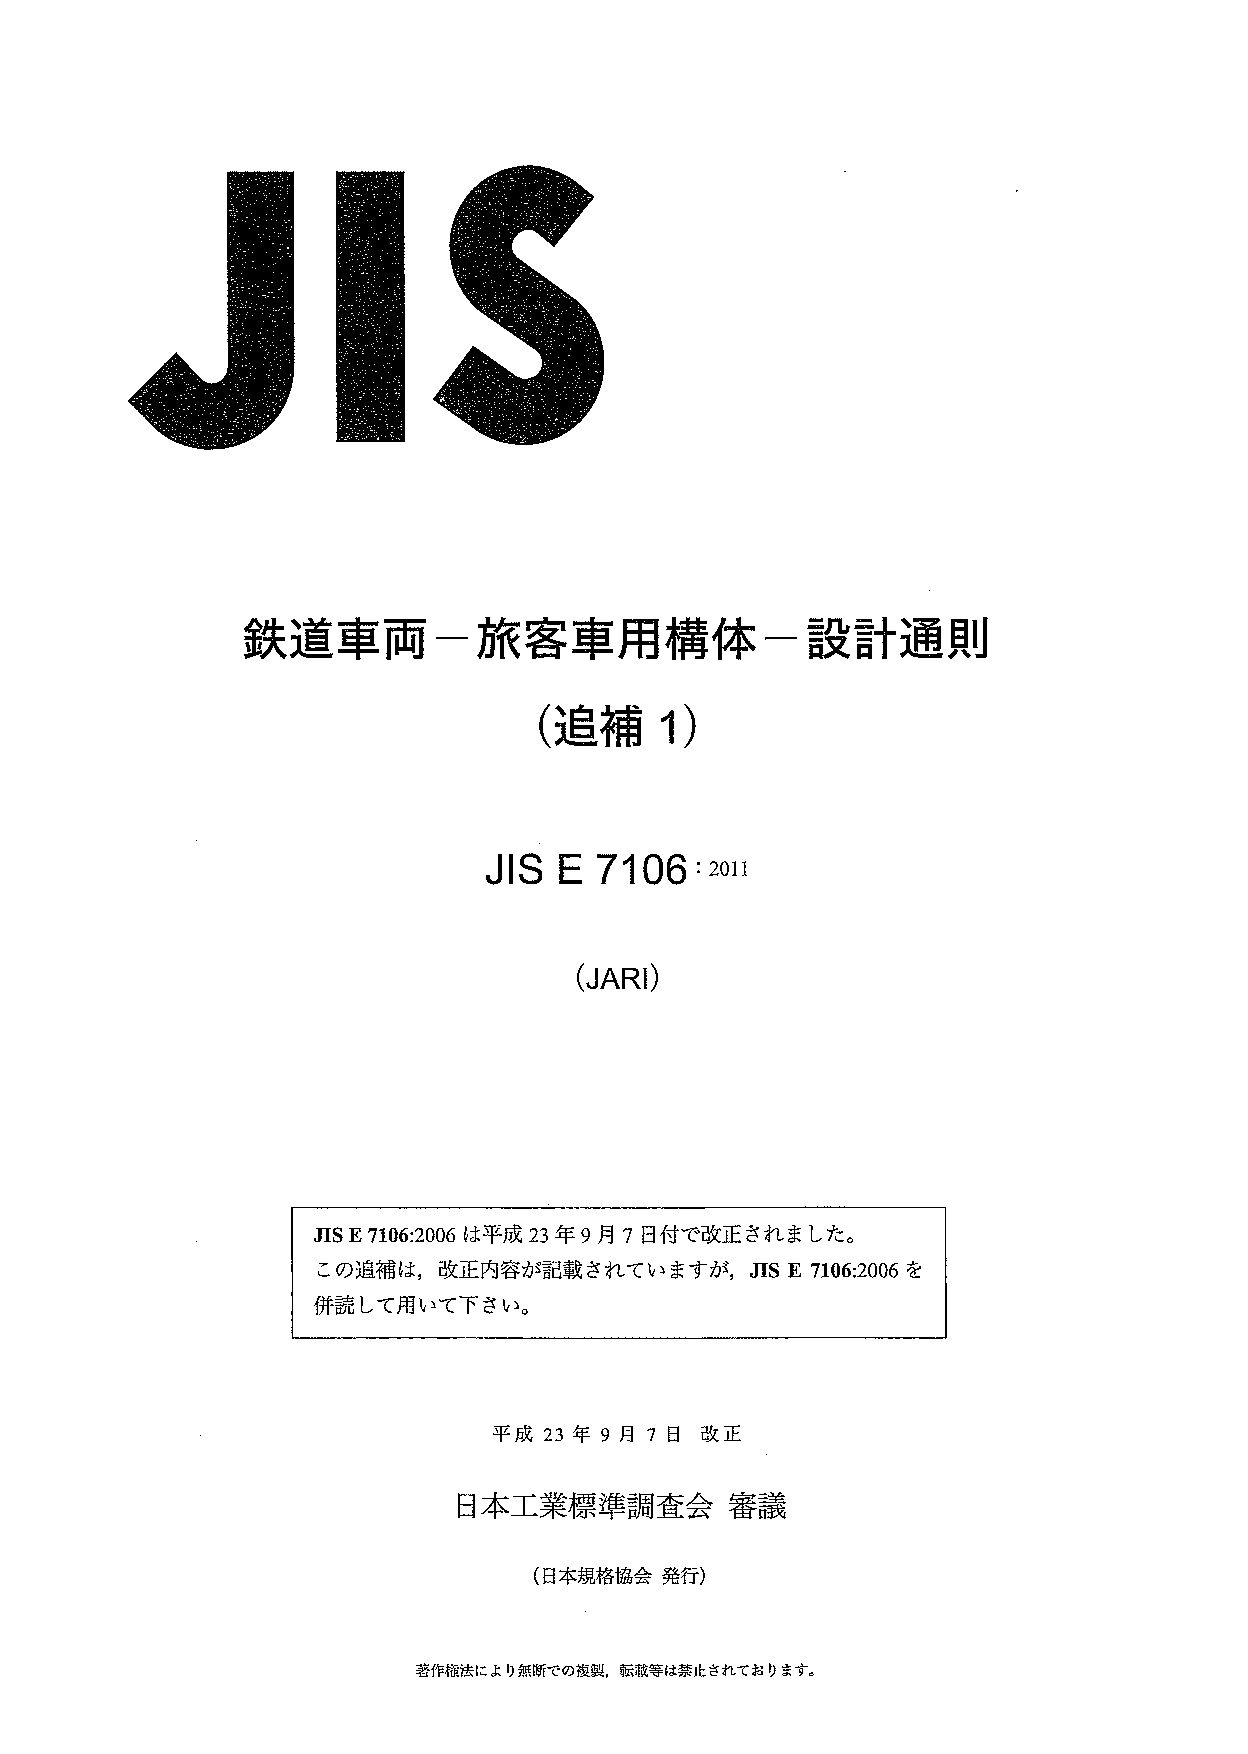 JIS E 7106 AMD 1:2011封面图